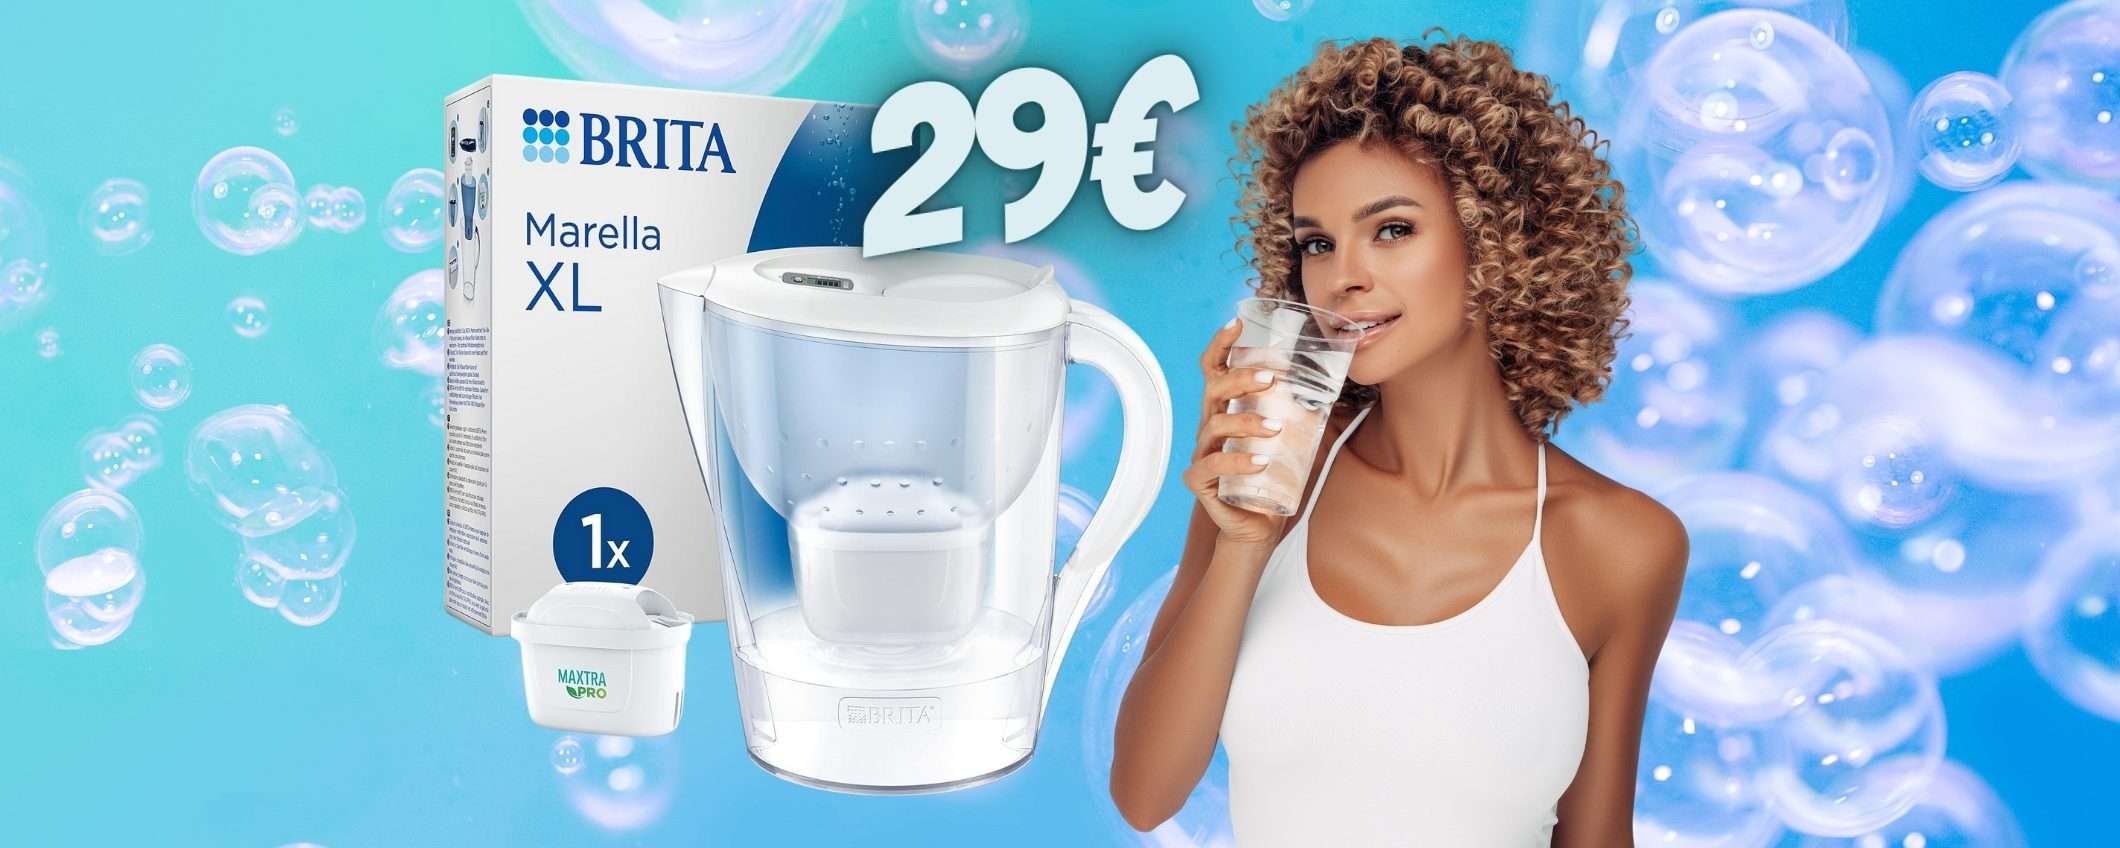 L'acqua buona a COSTO ZERO con la caraffa filtrante BRITA (solo 29€)